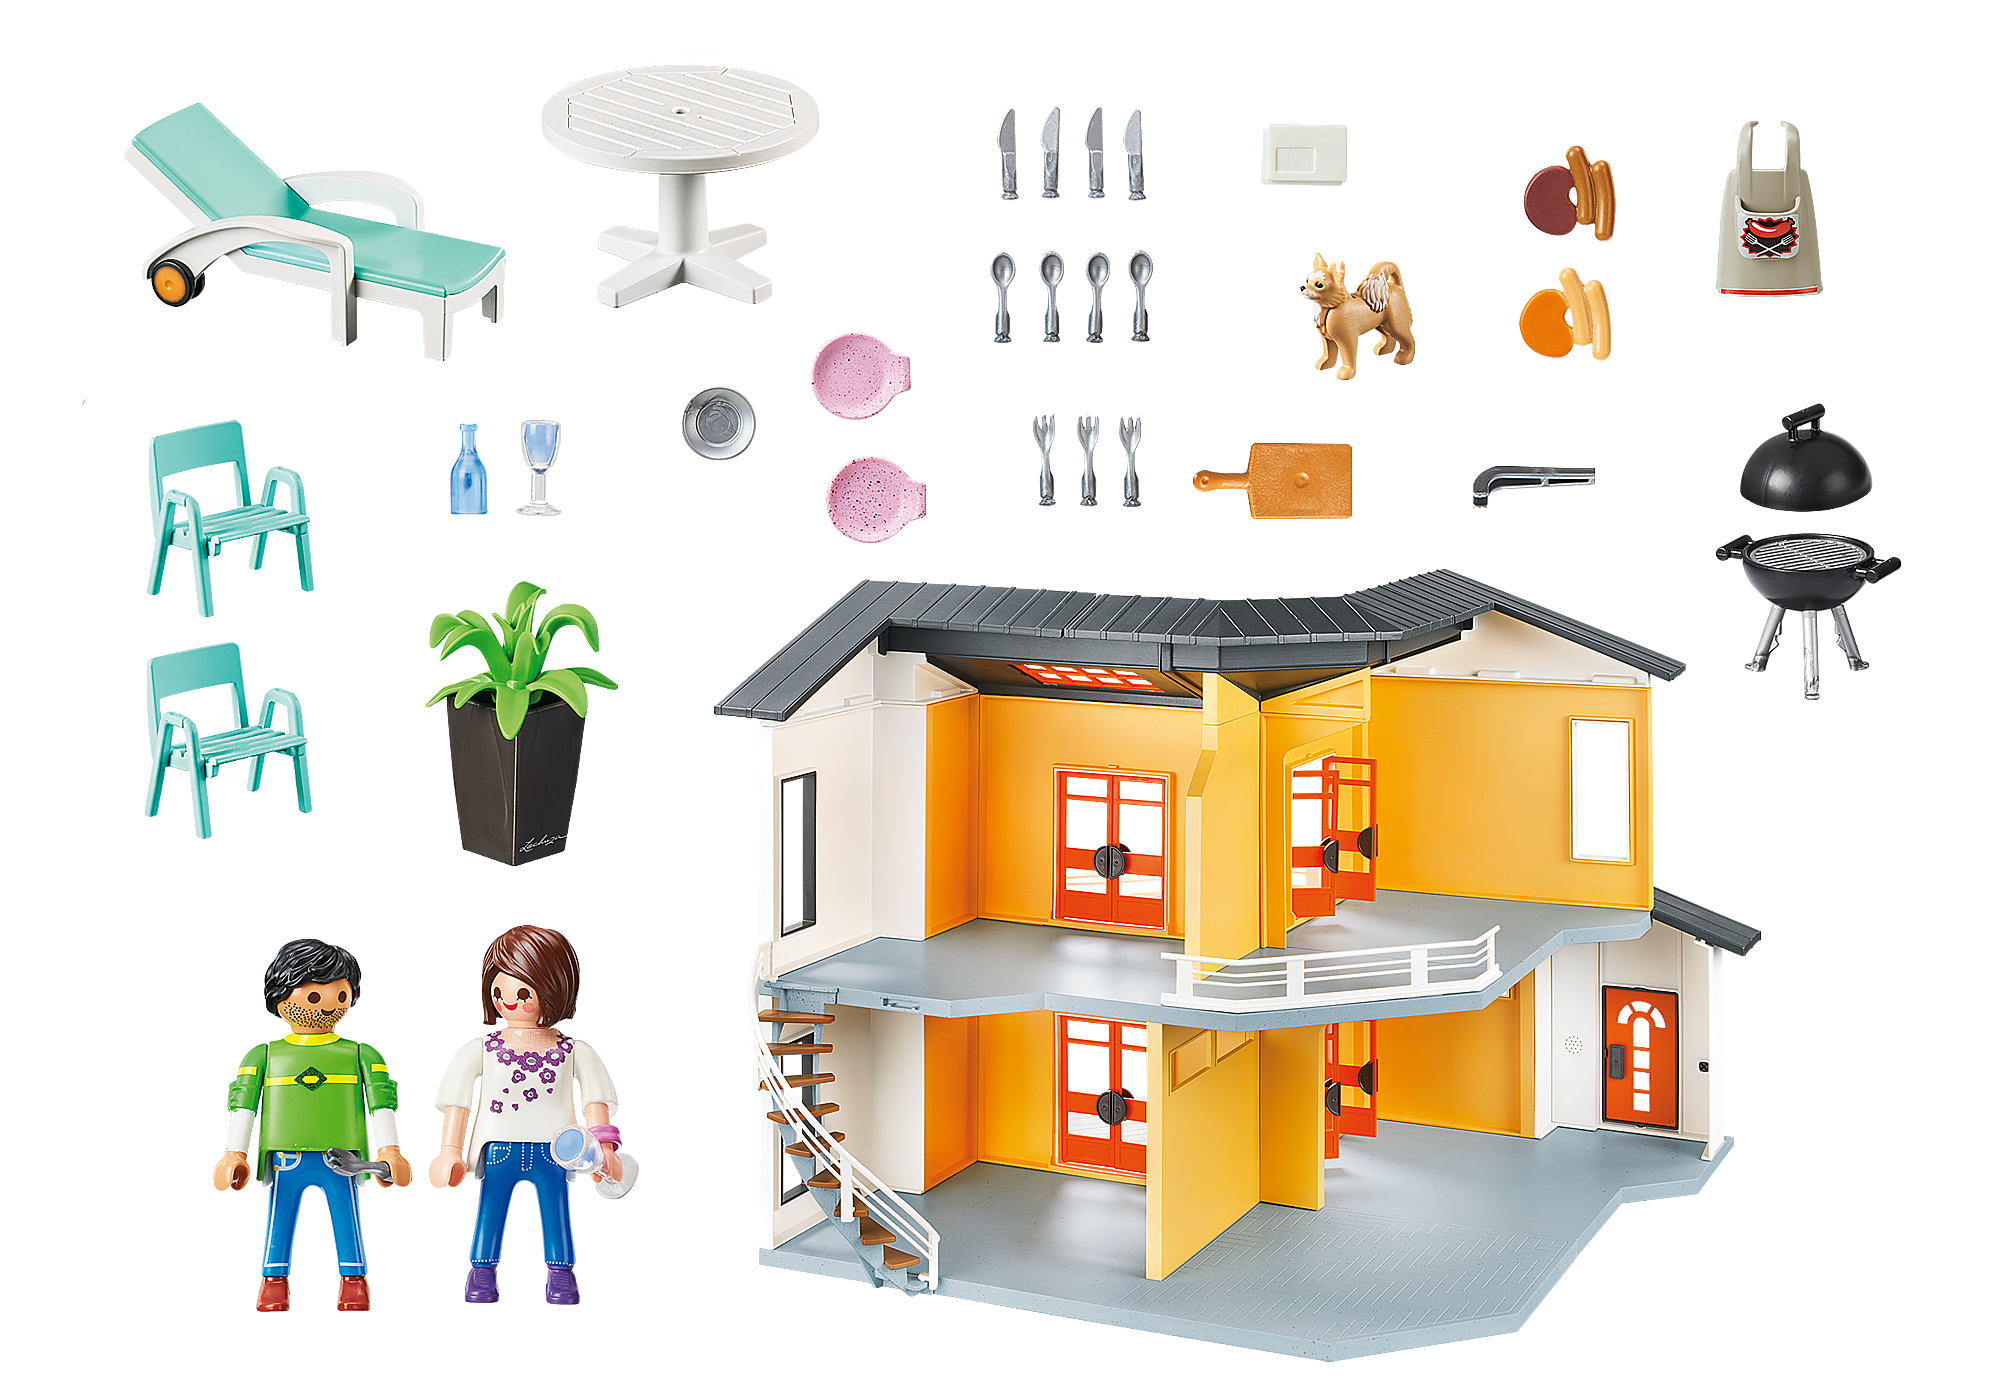 Salle de bain Playmobil City Life pour maison moderne - Avec douche et  lumière modernes 